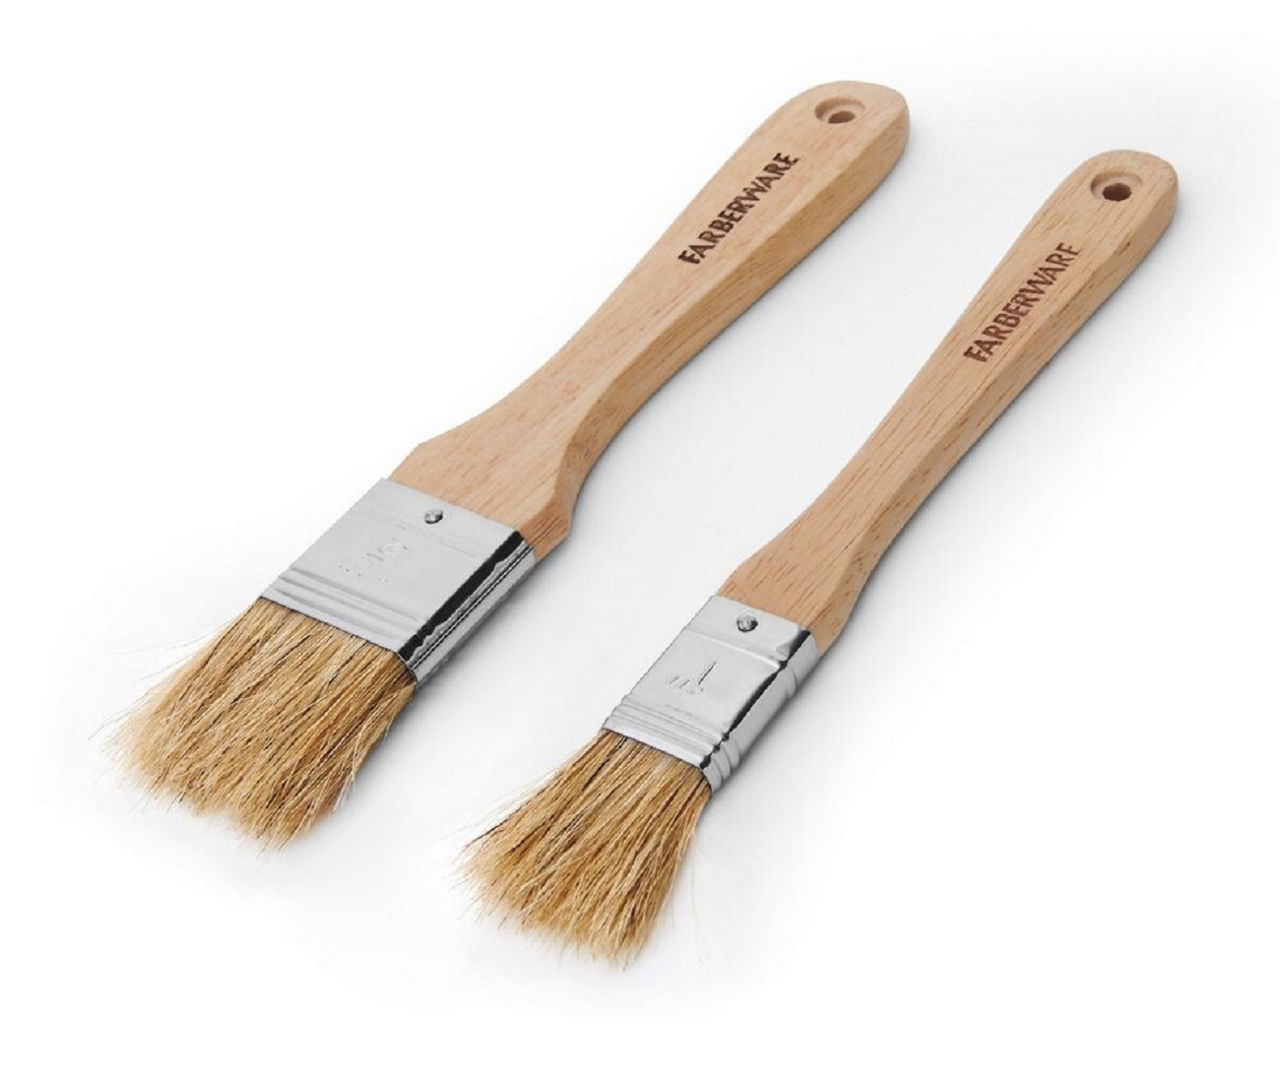 Farberware Wood Pastry Brushes, 2-Pack